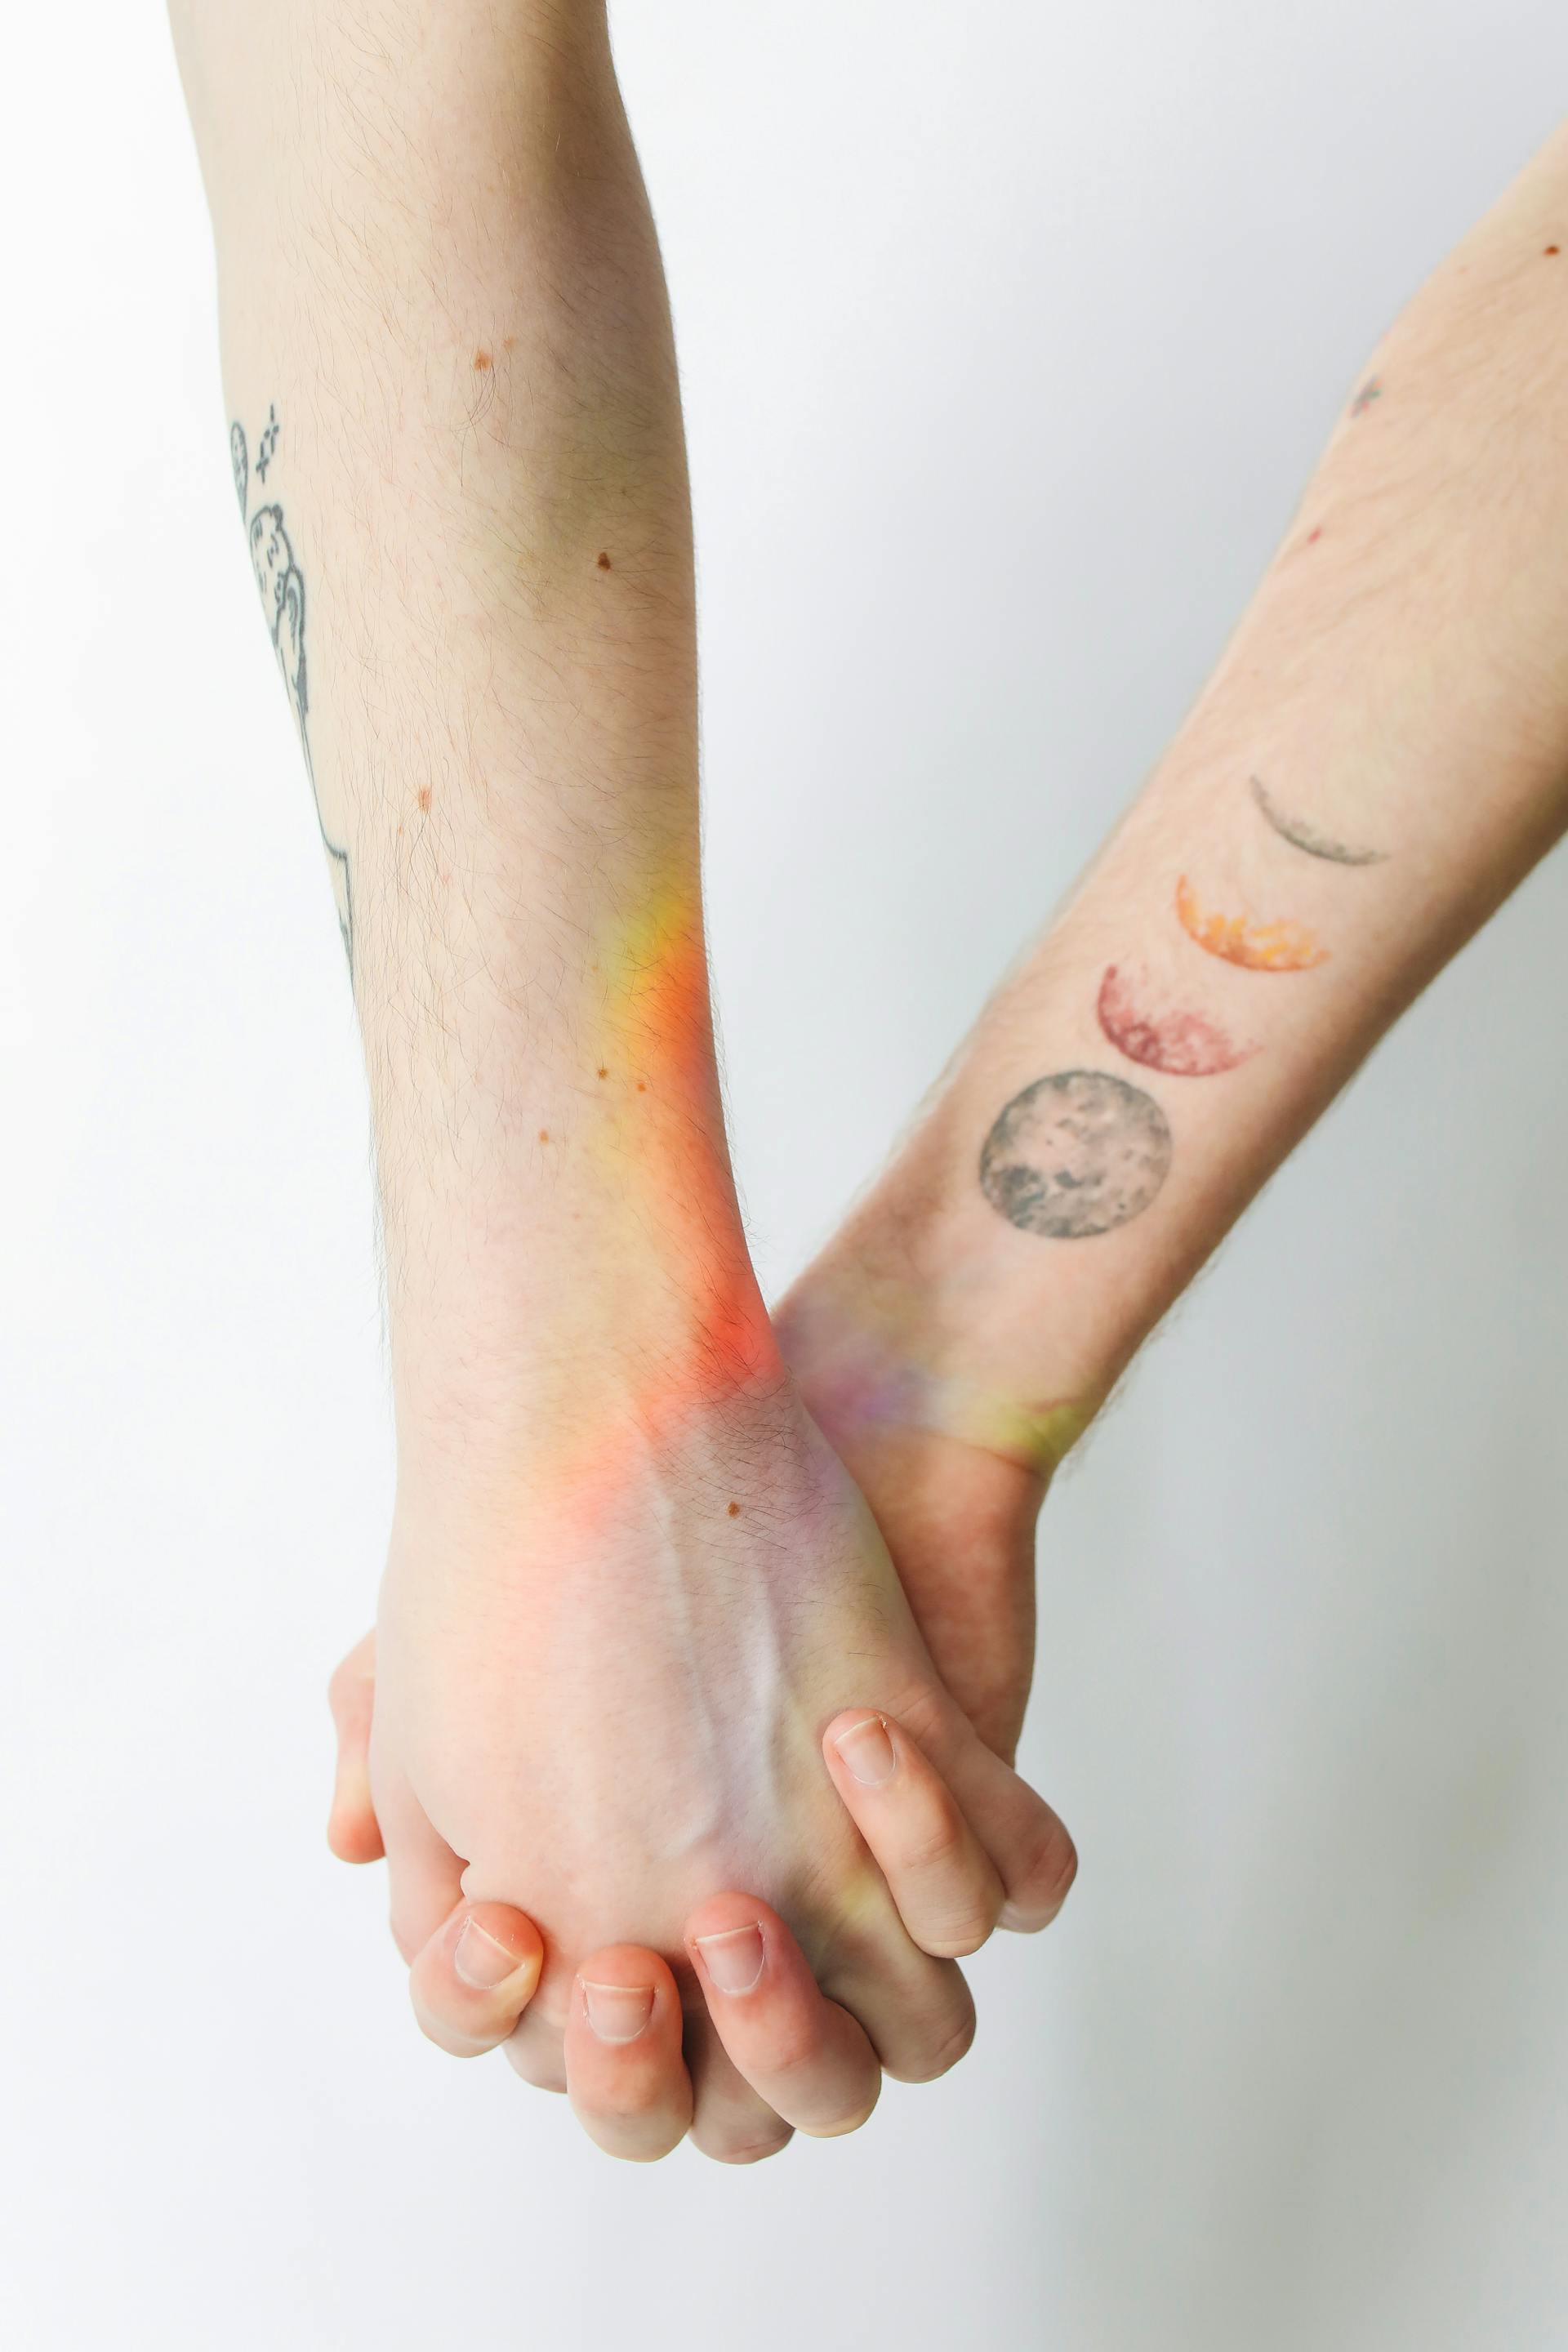 Un couple se tenant par la main | Source : Pexels